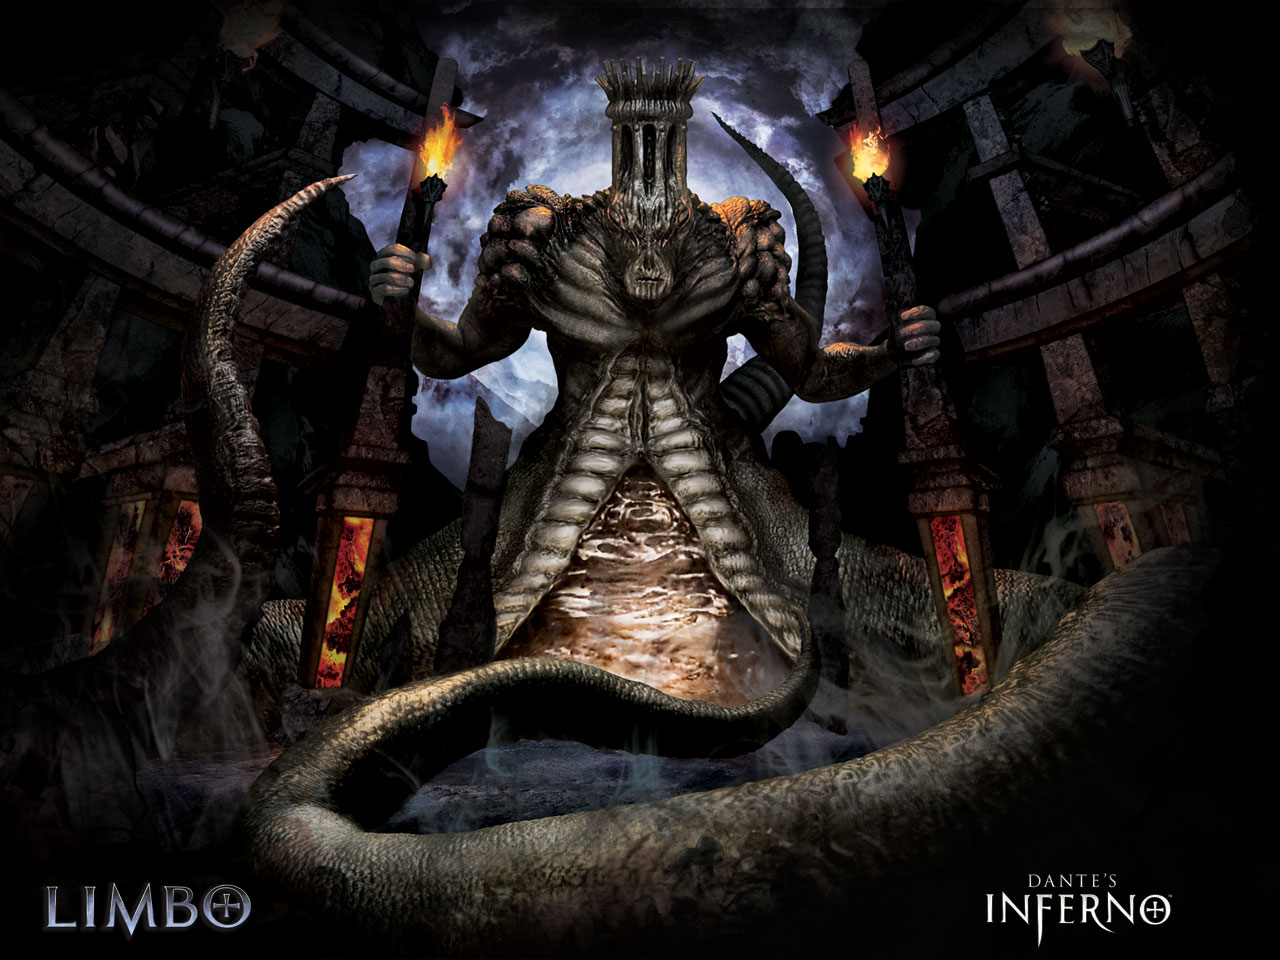 Dante's Inferno (video game) - Wikipedia